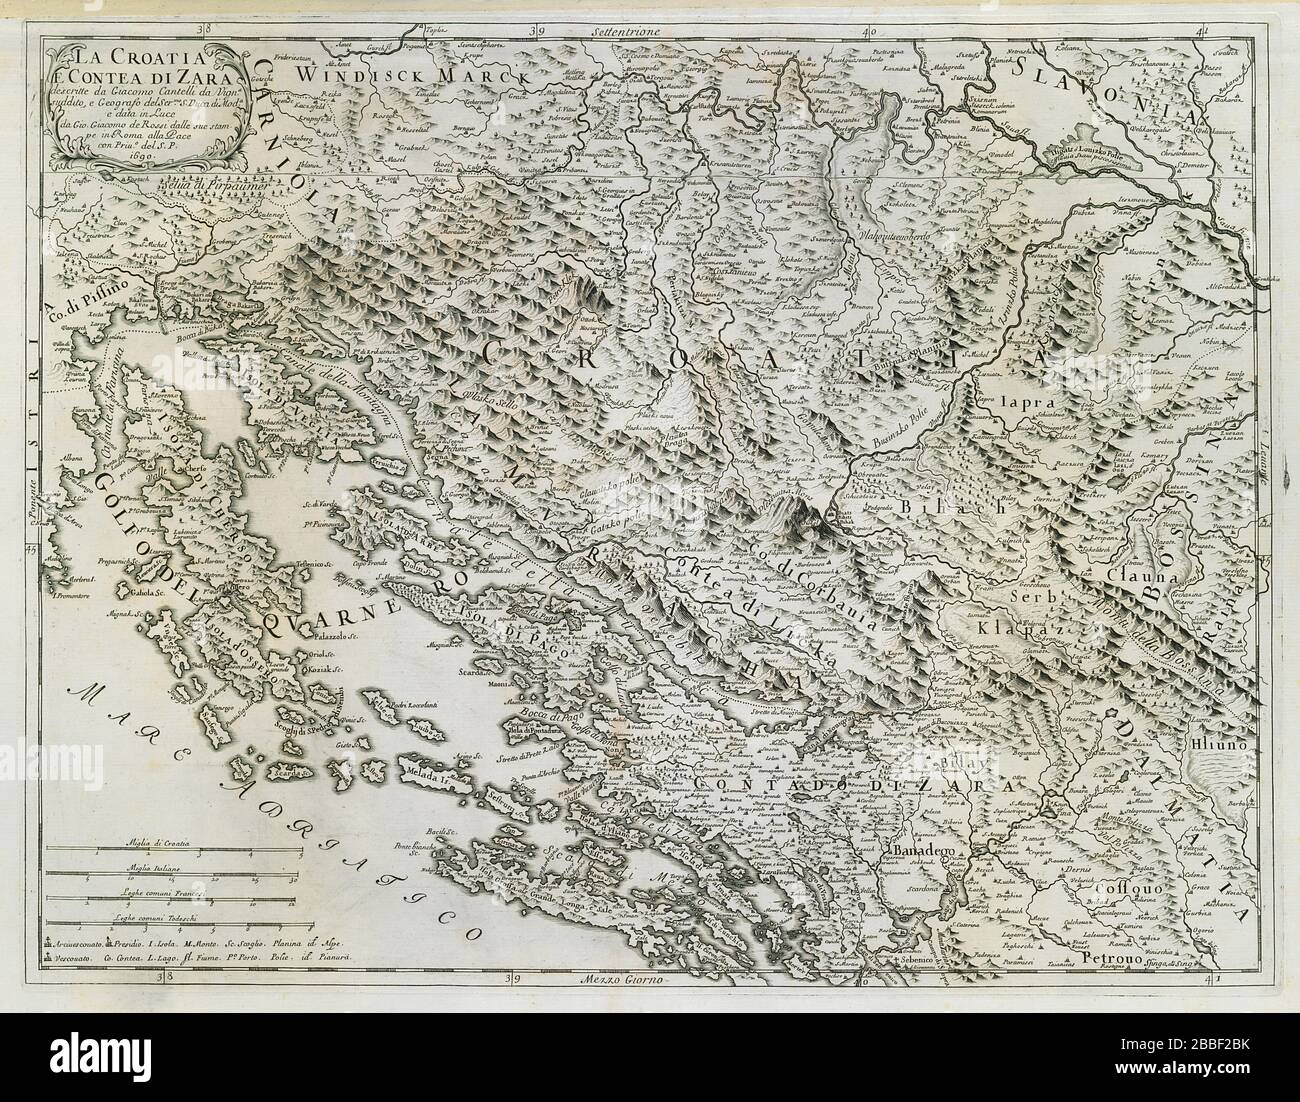 La Croazia e Contea di Zara. Kvarner Dalmazia Zadar. MAPPA ROSSI / CANTELLI  1690 Foto stock - Alamy